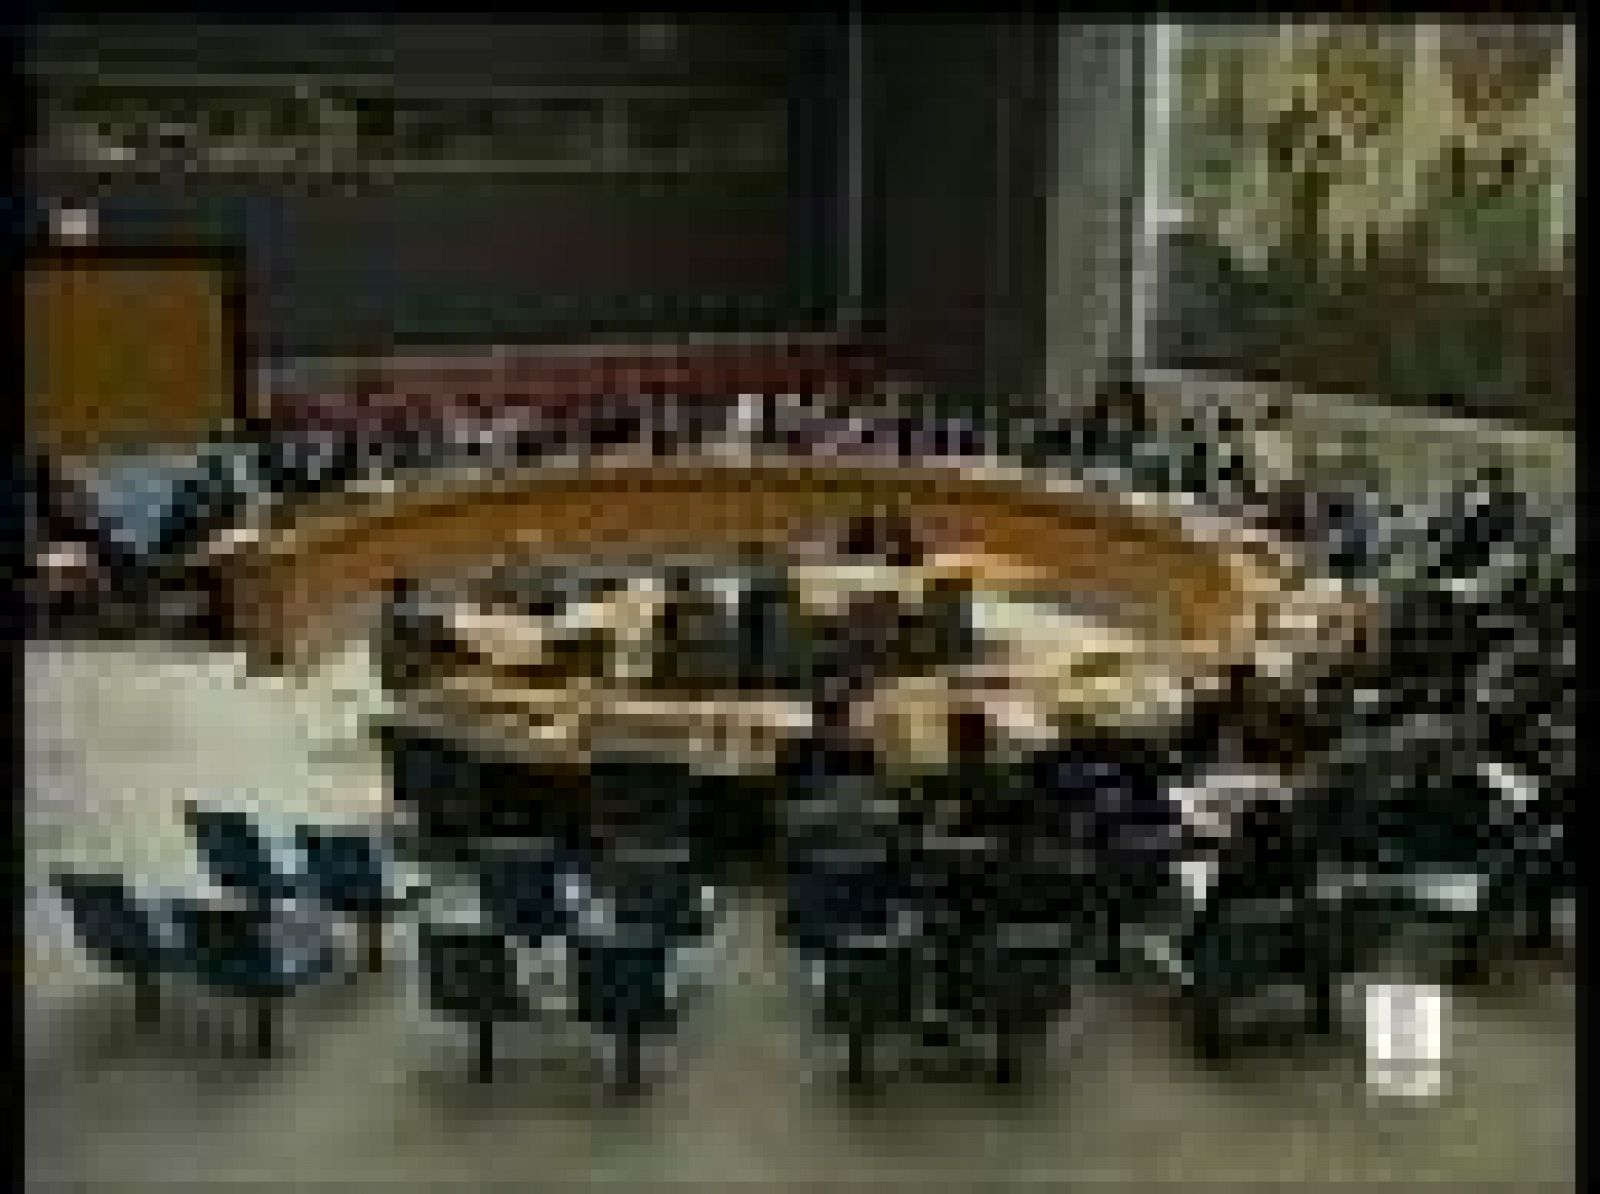  El Consejo de Seguridad de la ONU ha condenado de forma unánime la campaña de violencia e intimidación desatada por el gobierno de Zimbabue contra la oposición. Y el secretario general, Ban Ki Moon, ha pedido que se aplacen las elecciones previstas para el viernes. 